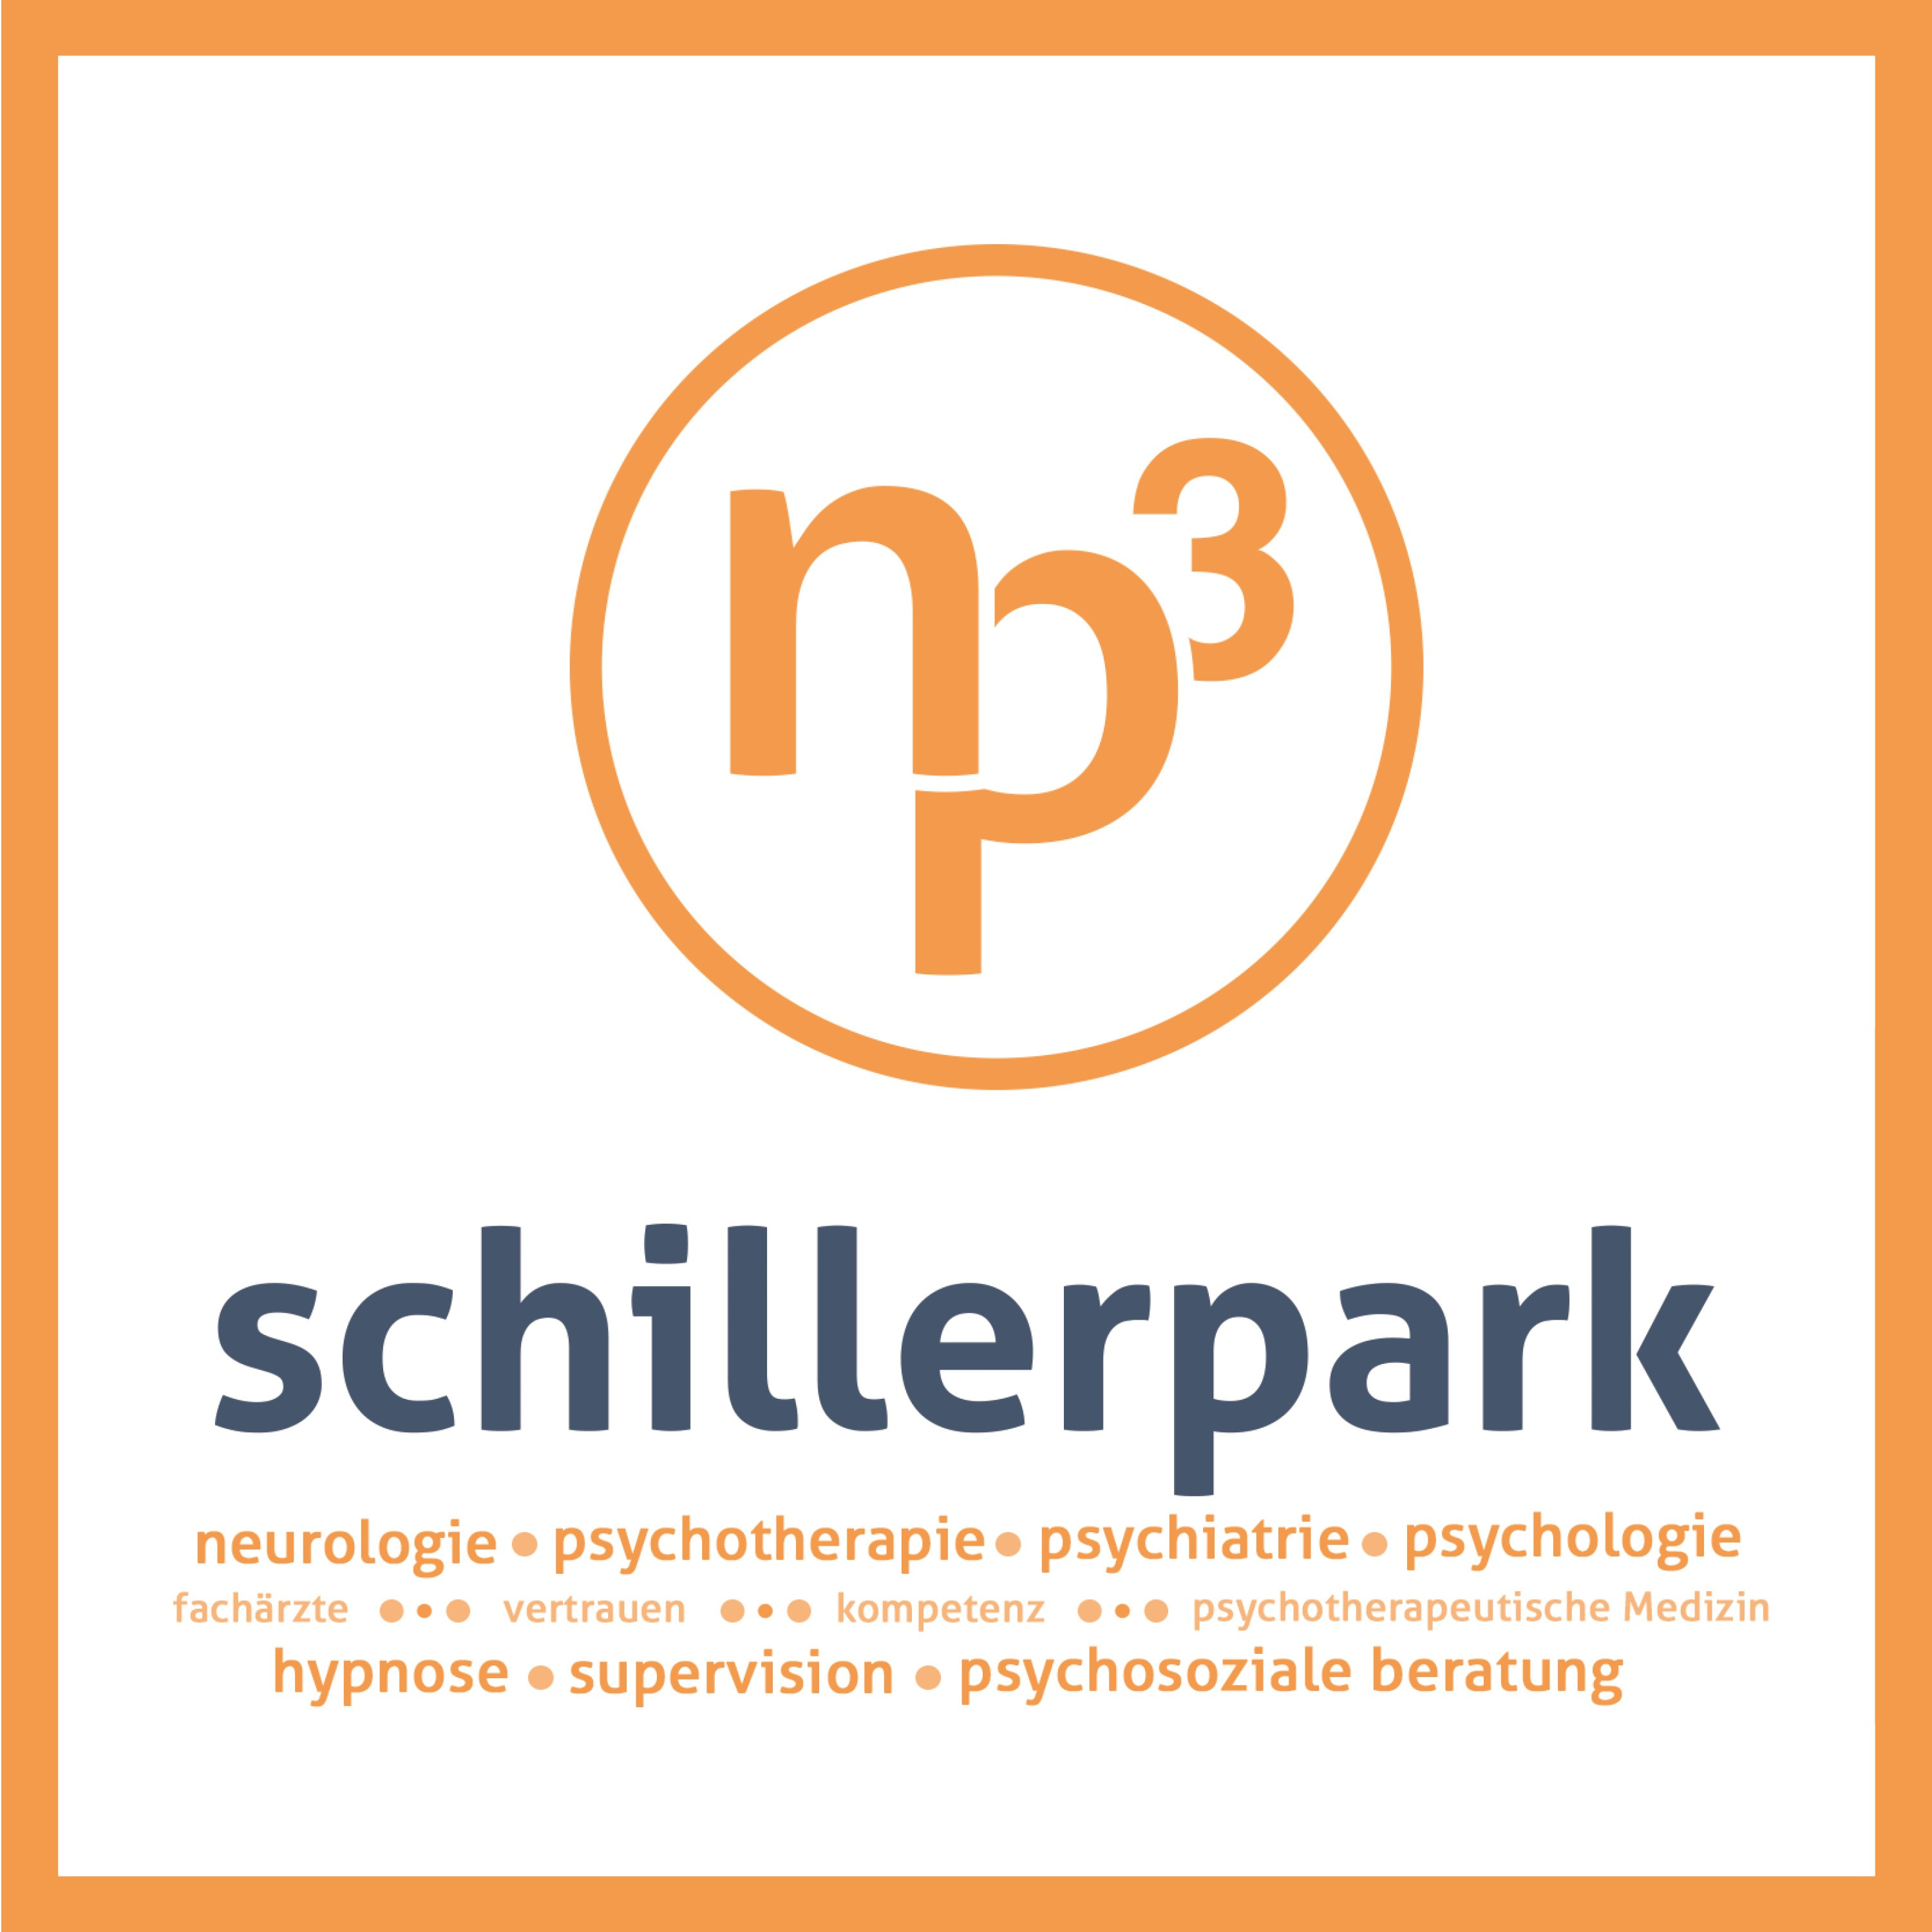 NP3 Schillerpark in St. Pölten